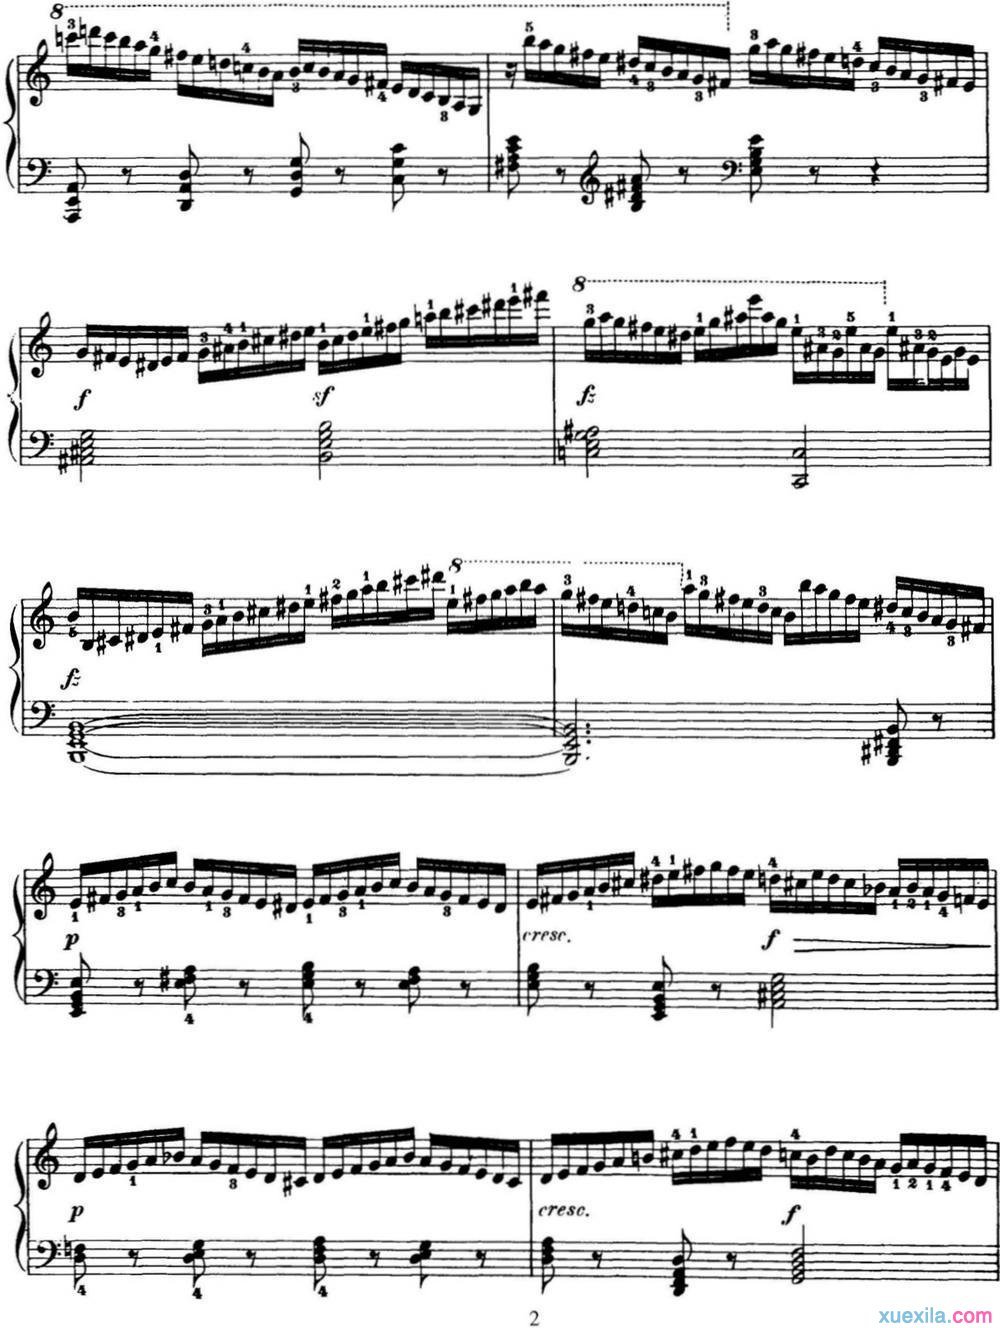 740钢琴手指灵巧技术练习曲17钢琴谱